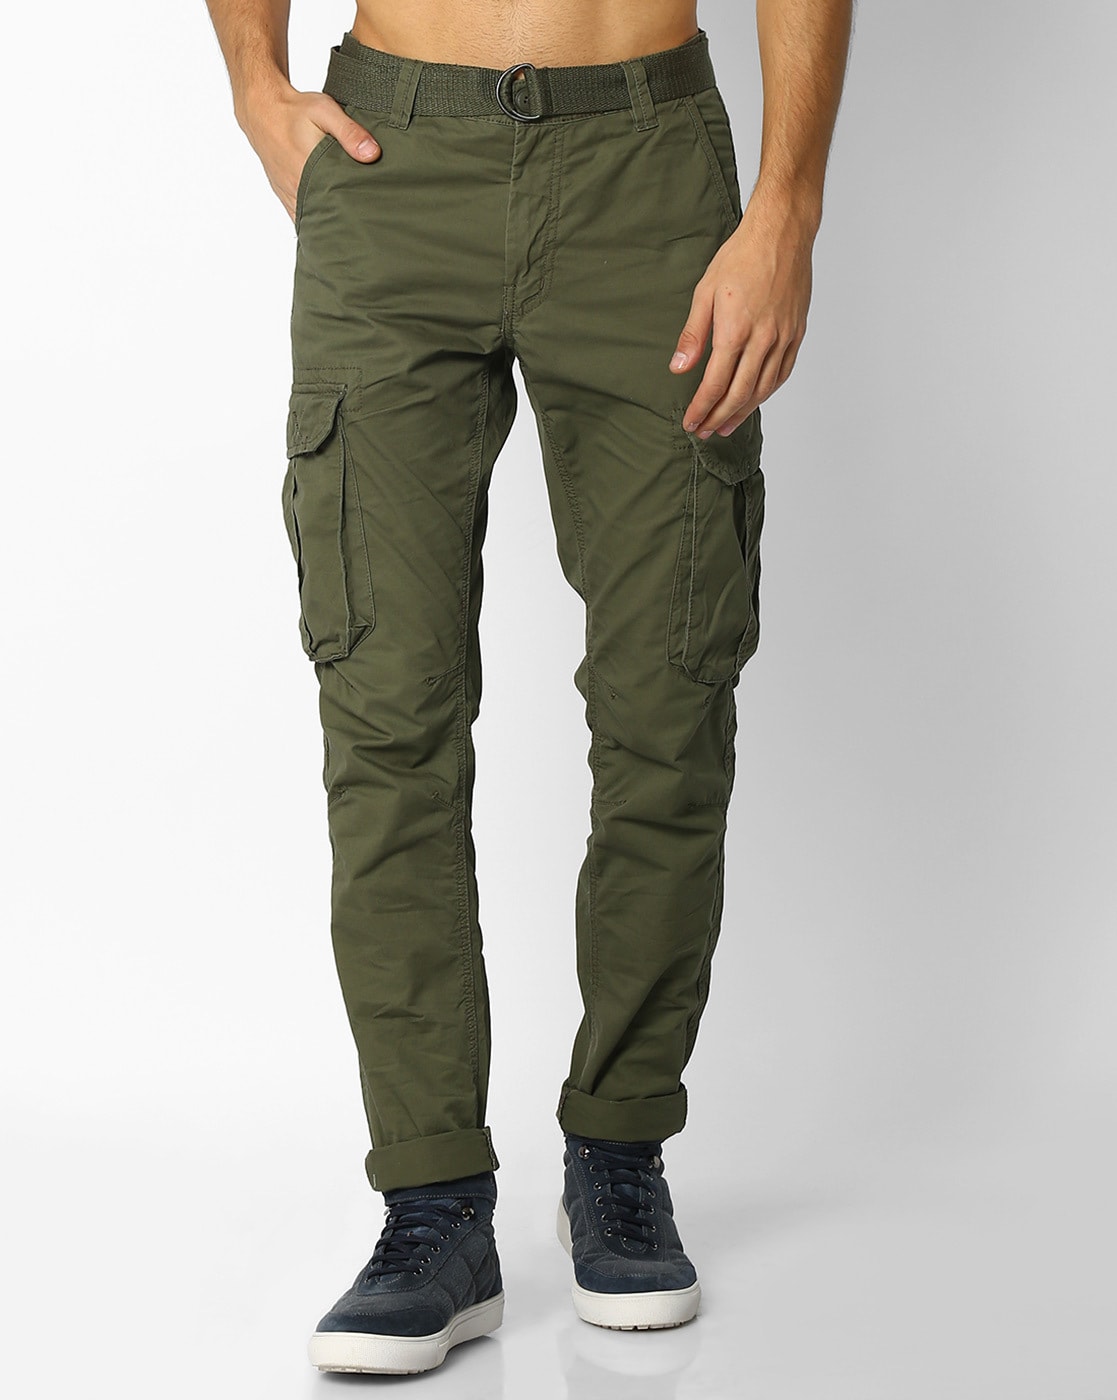 mens green skinny cargo pants